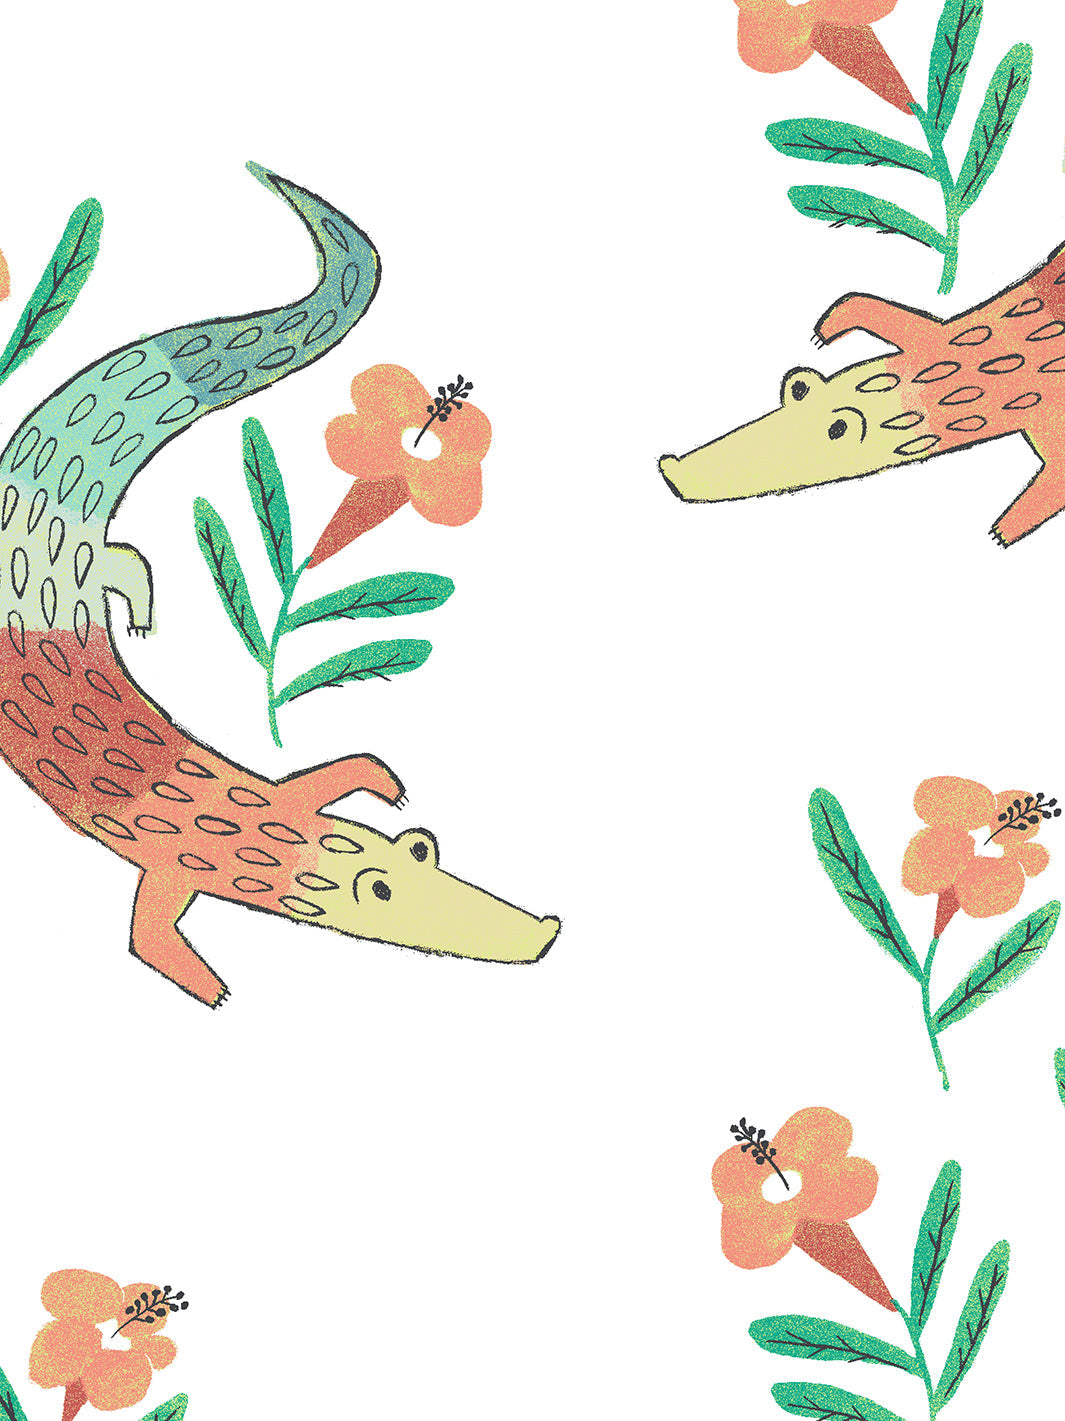 'Gator Garden' Wallpaper by Tea Collection - Baja